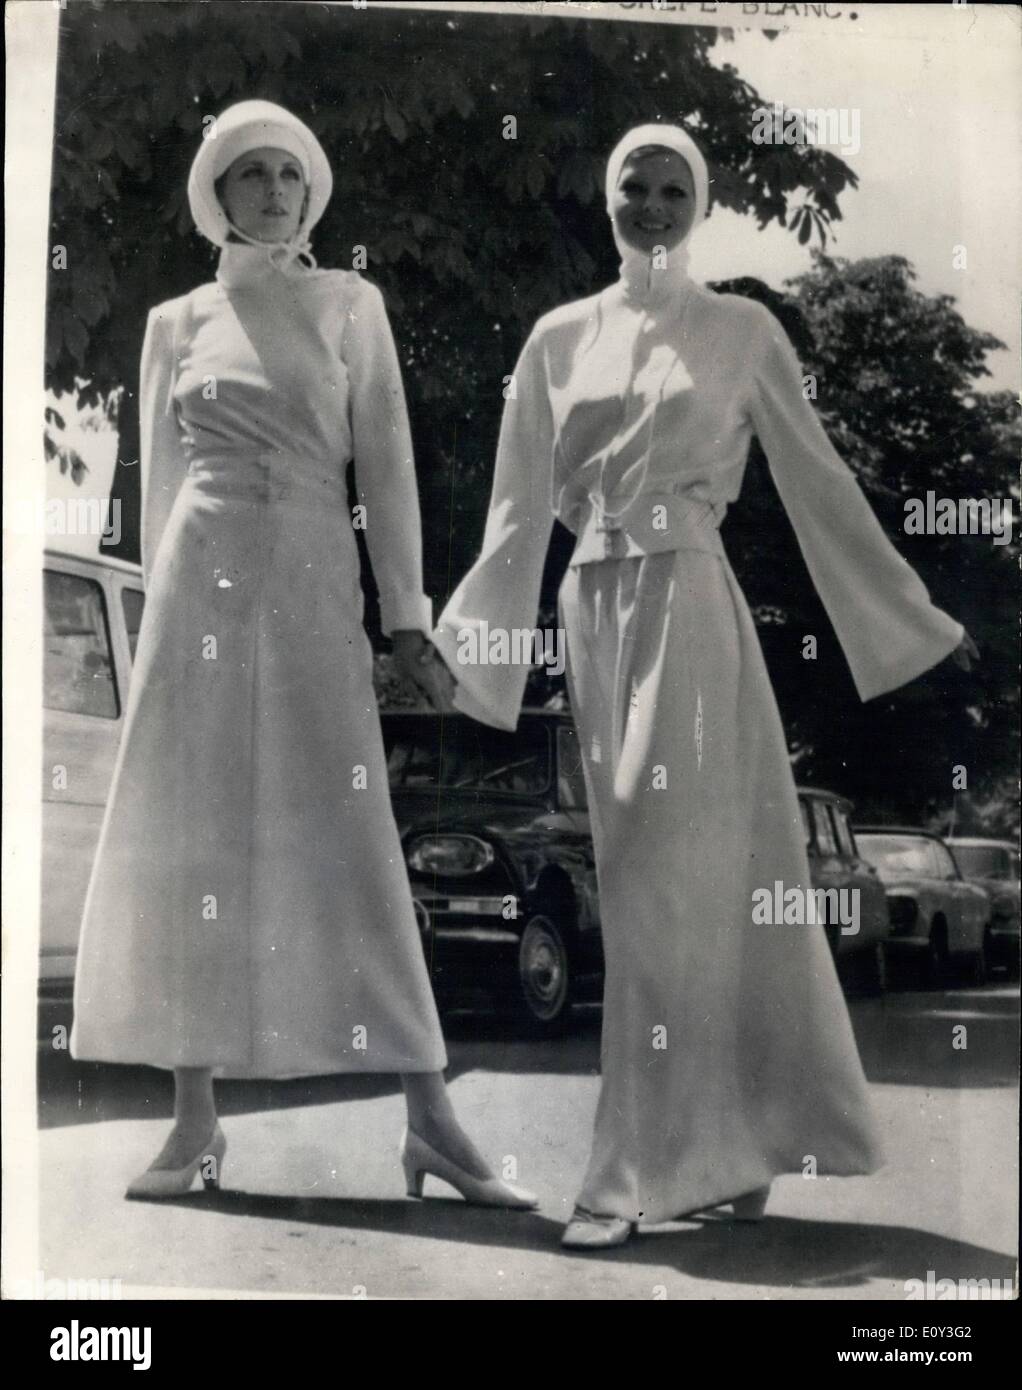 Juillet 07, 1968 - Jacques Heim présente Fashions un couvent : Dans la  boutique américaine mini-jupe versions des habitudes alimentaires portés  par les moniales sont vendus par centaines. Maintenant dans le nouveau